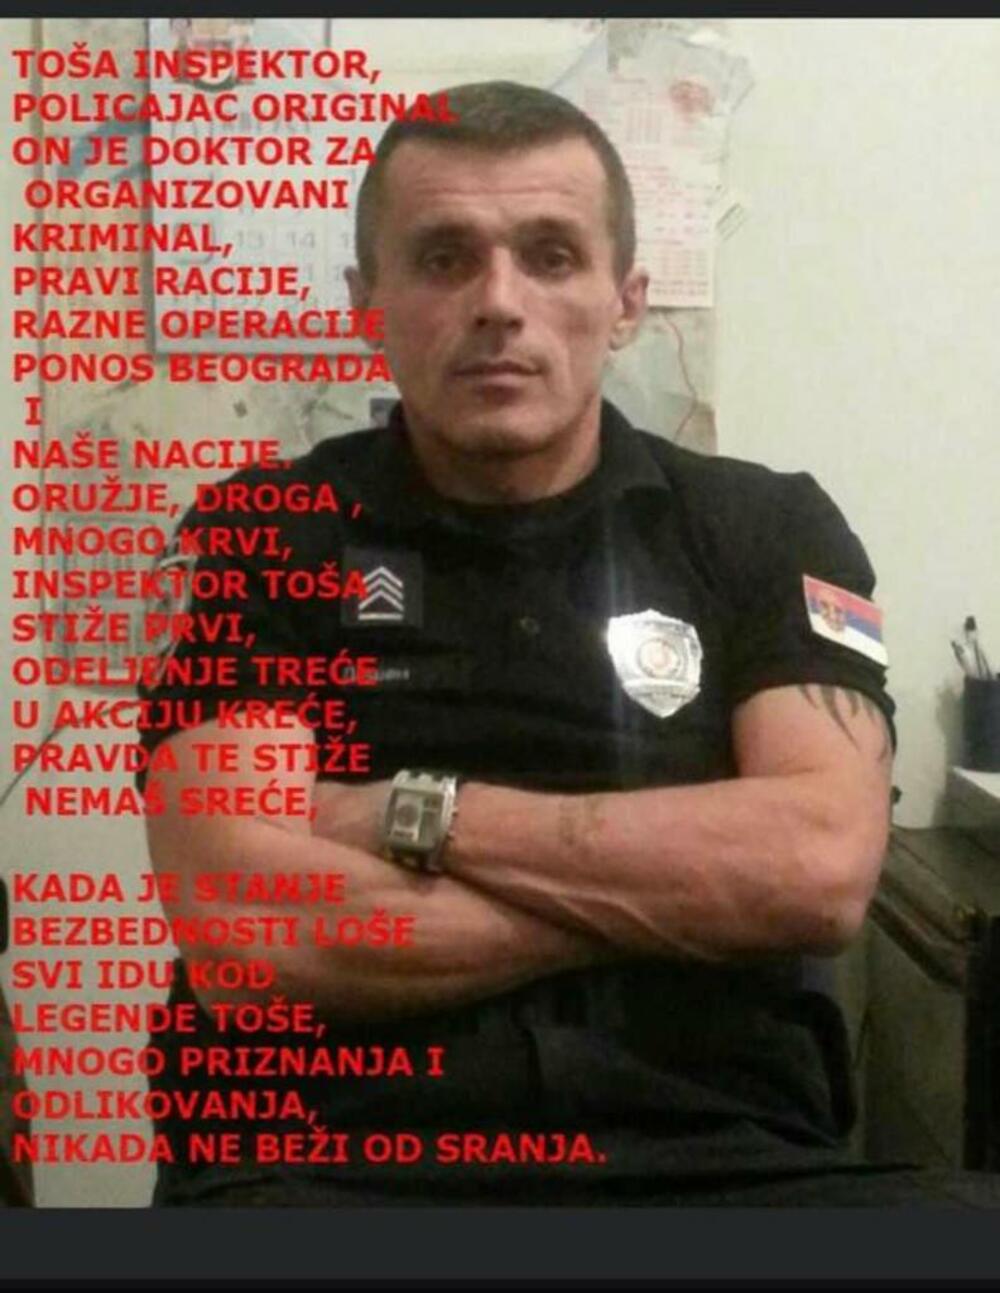 Policajac, Mup, Todor Došen, Todor Dosen